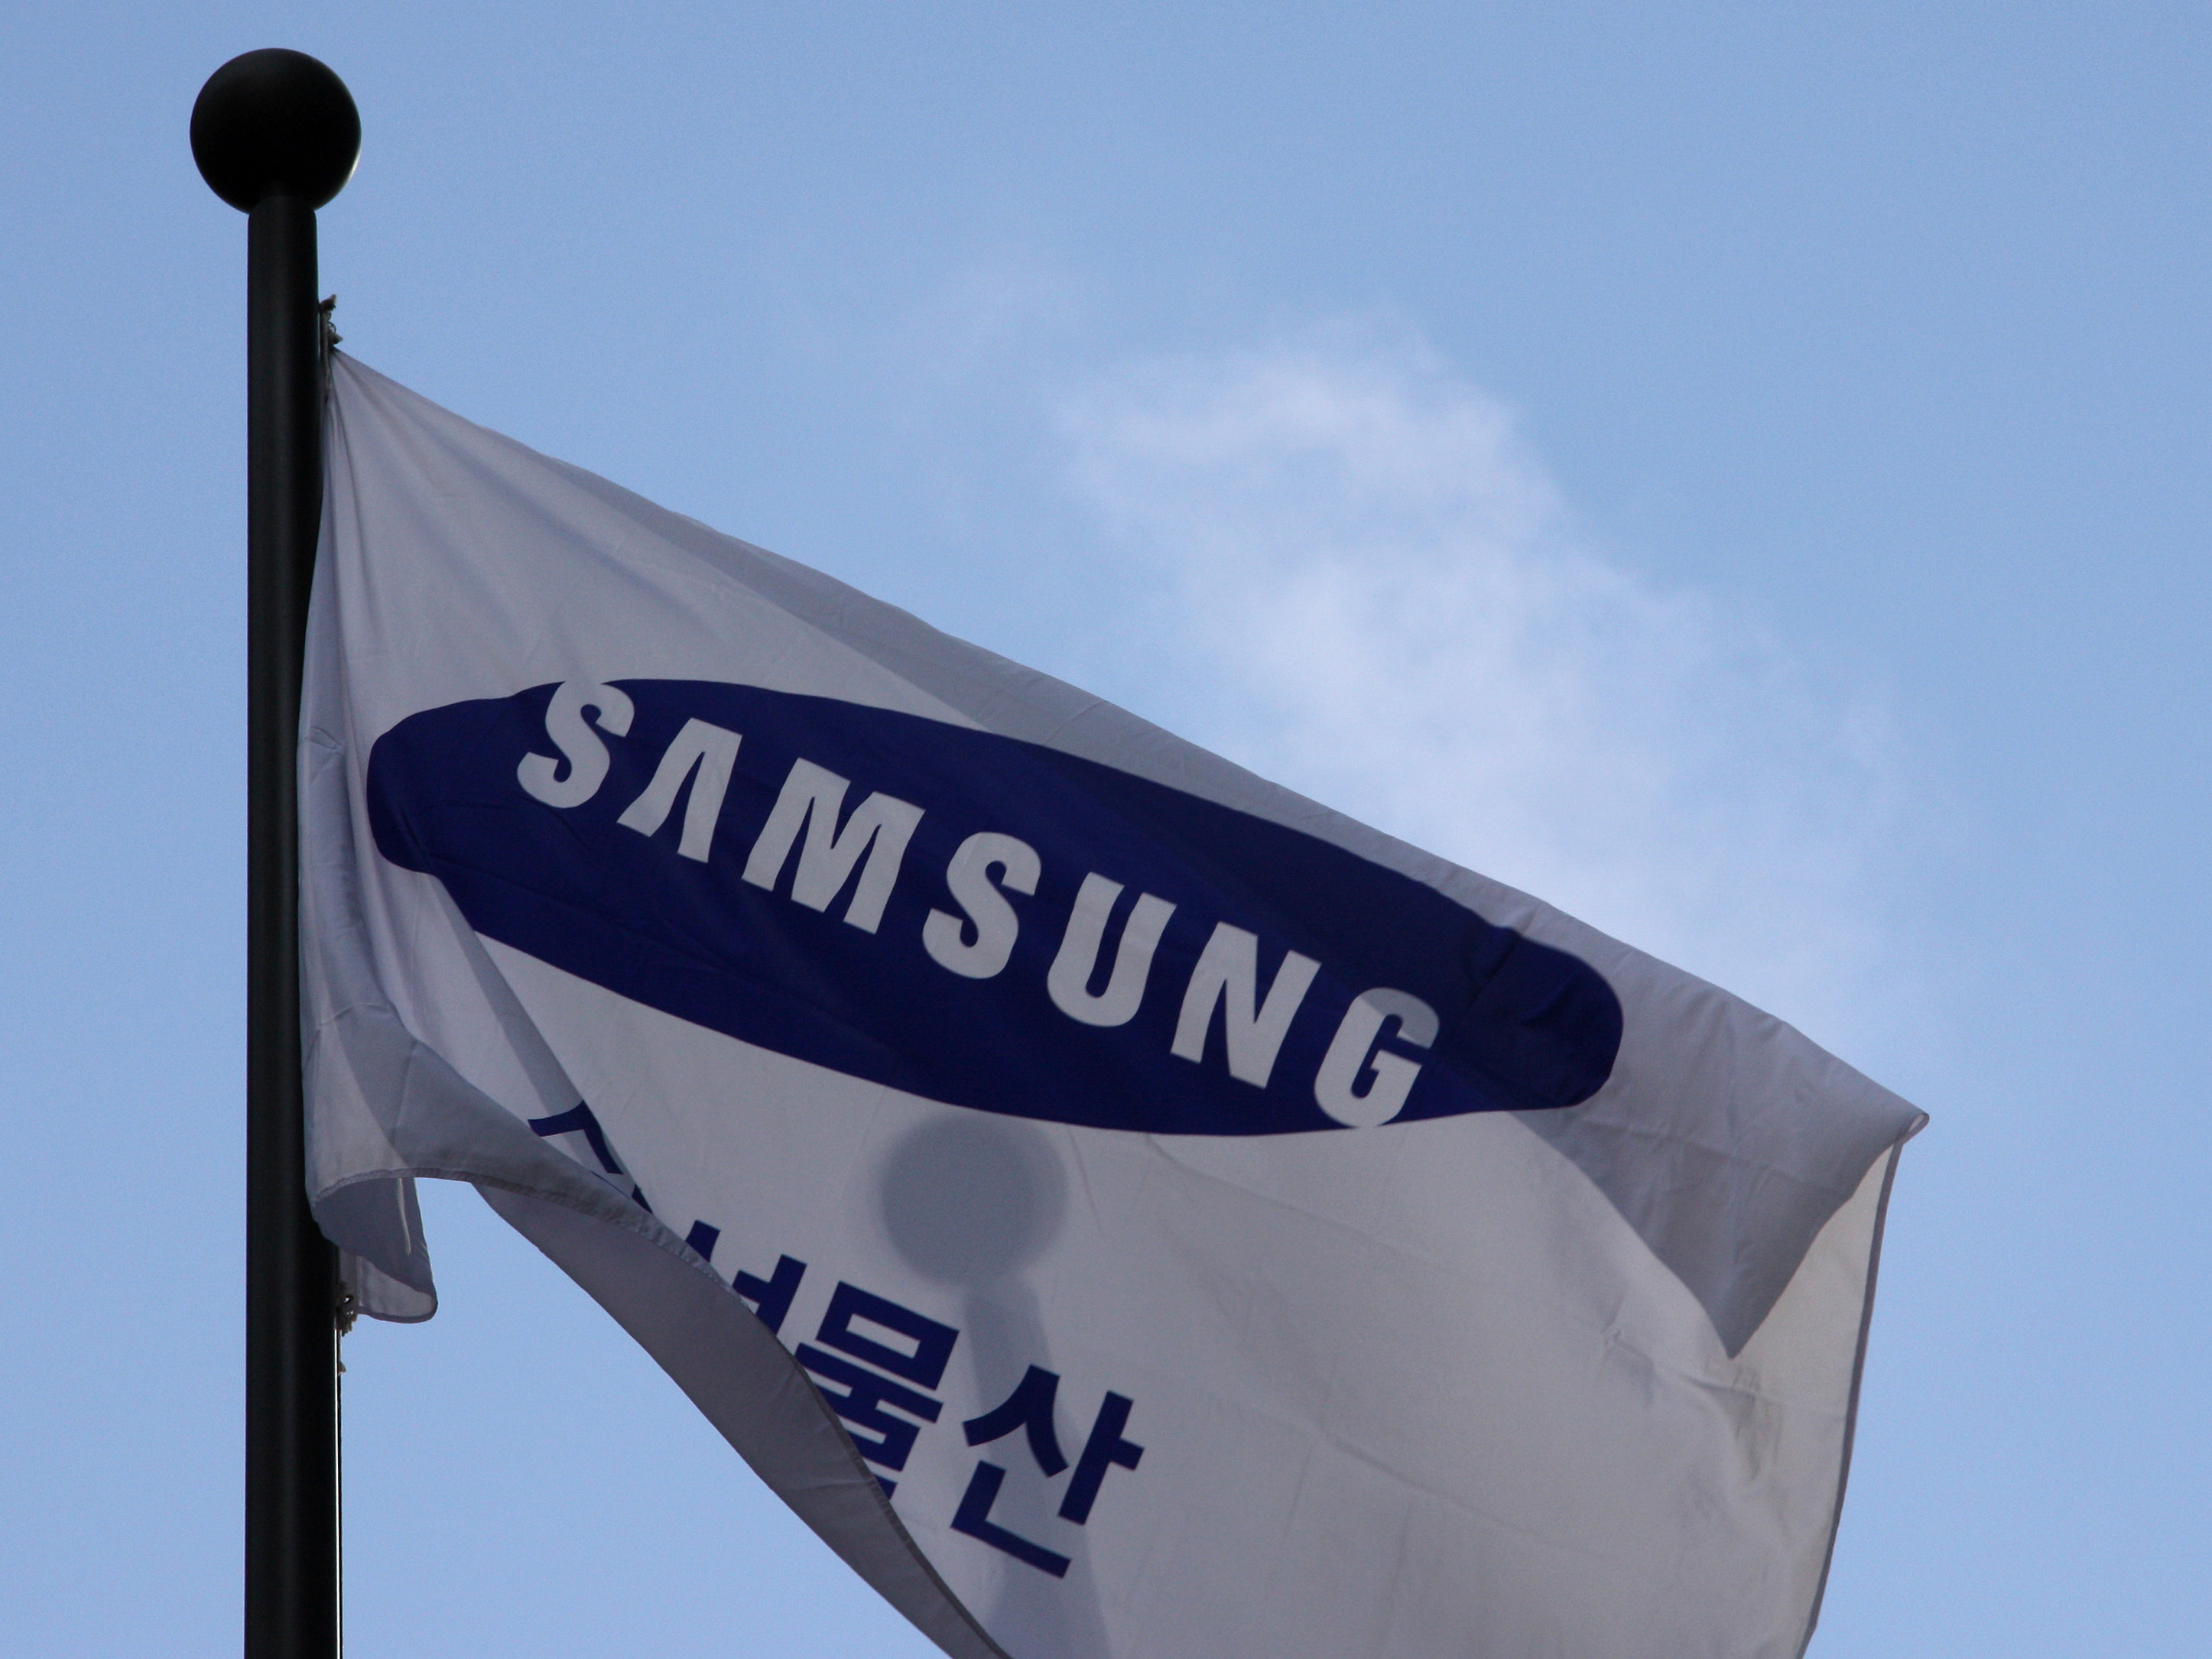 South Korea: Samsung headquarter, Seoul